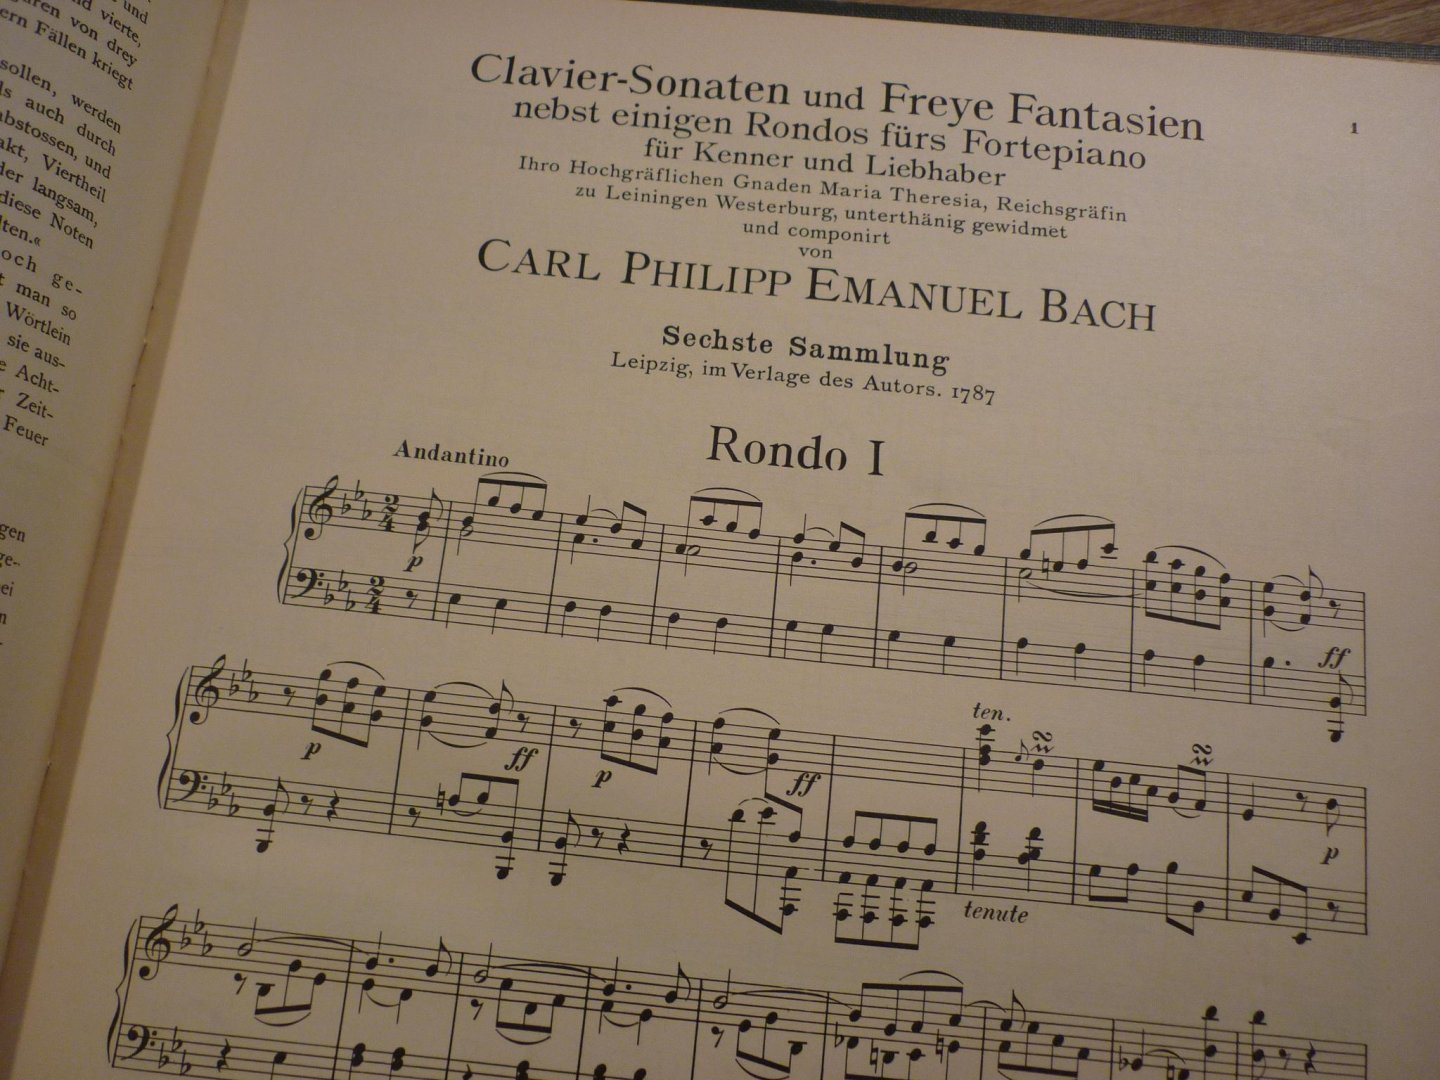 Bach; Carl Philipp Emanuel (1714 - 1788) - Die 6 Sammlungen, Heft 4, 5 en 6: Sechs Claviersonaten // Claviersonaten nebst einigen Rondos für das Forte-Piano //